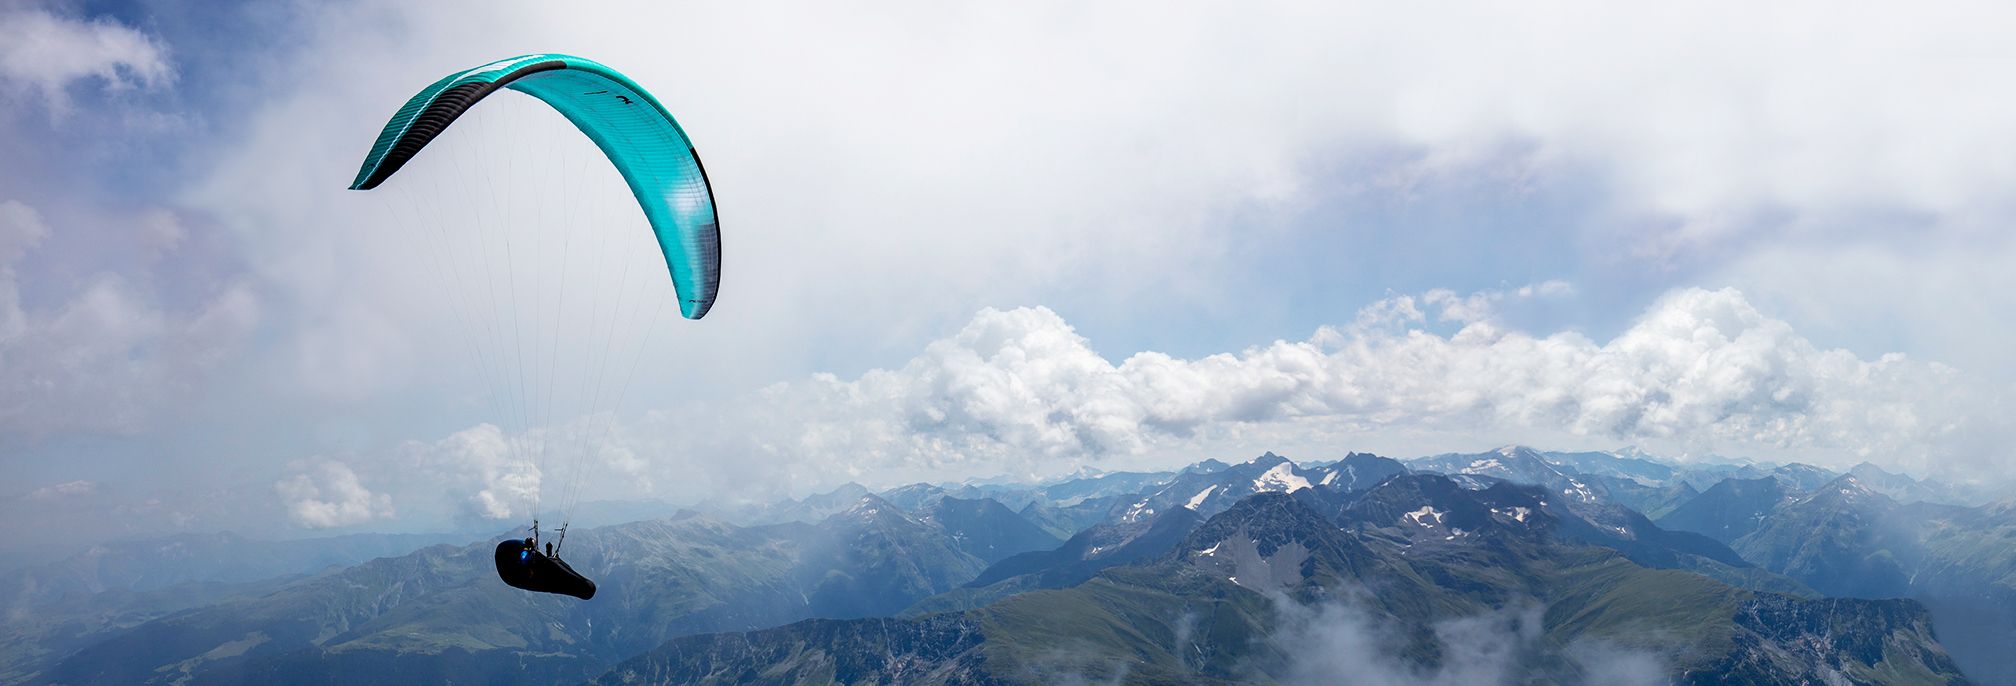 Pierre Remy y su X-One baten récords en los Pirineos